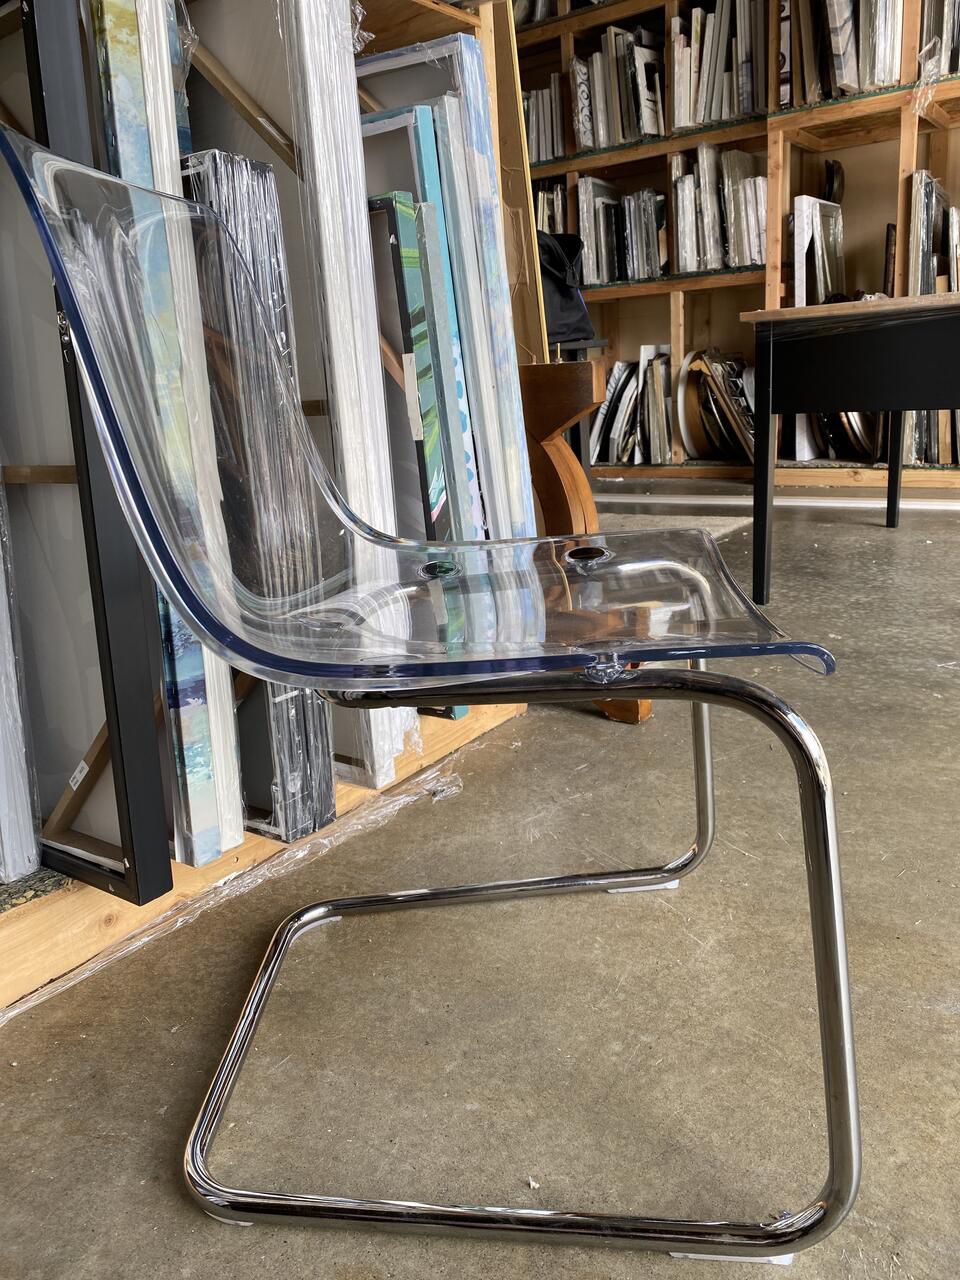 Clear Chair